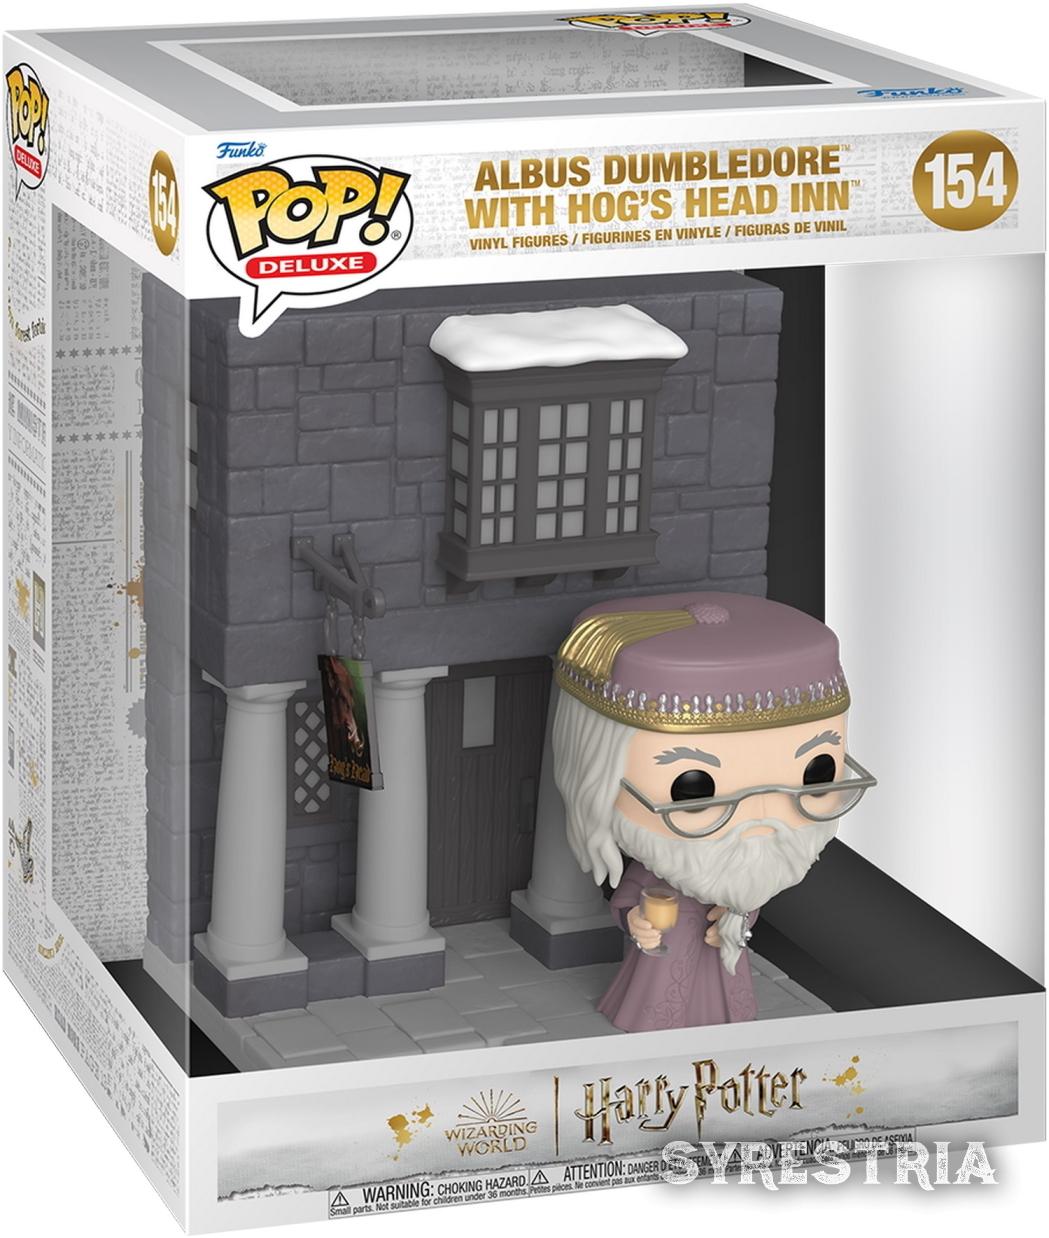 Harry Potter - Albus Dumbledore with Hog's Head inn 154 - Funko Pop! Deluxe